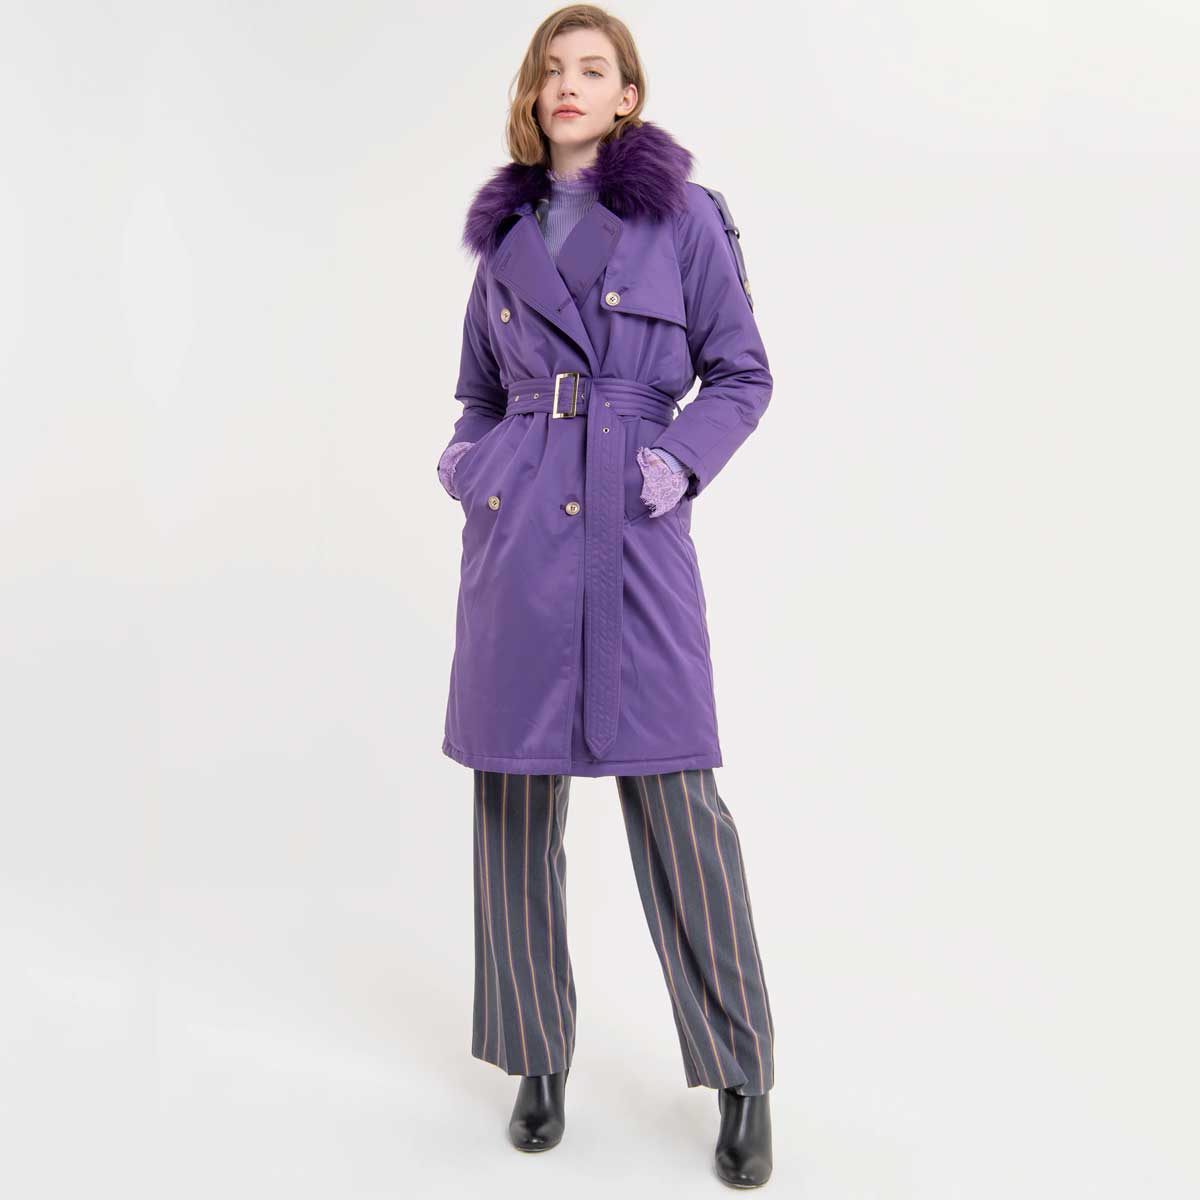 moda cappotti colorati inverno 